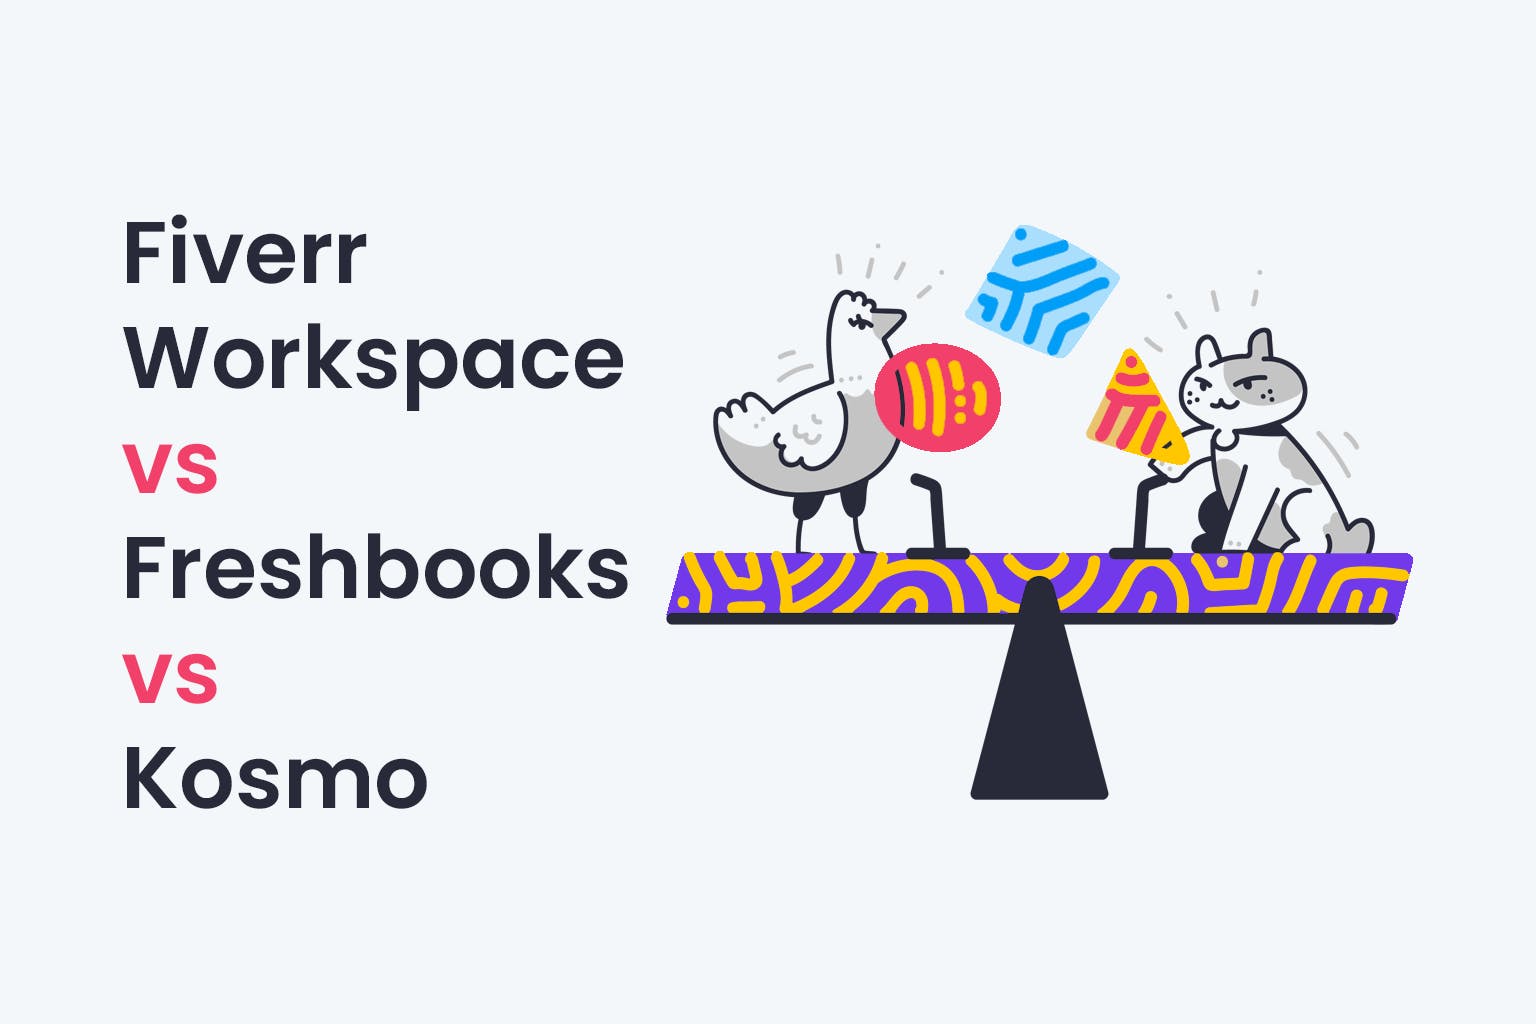 Fiverr Workspace vs Freshbooks vs Kosmo